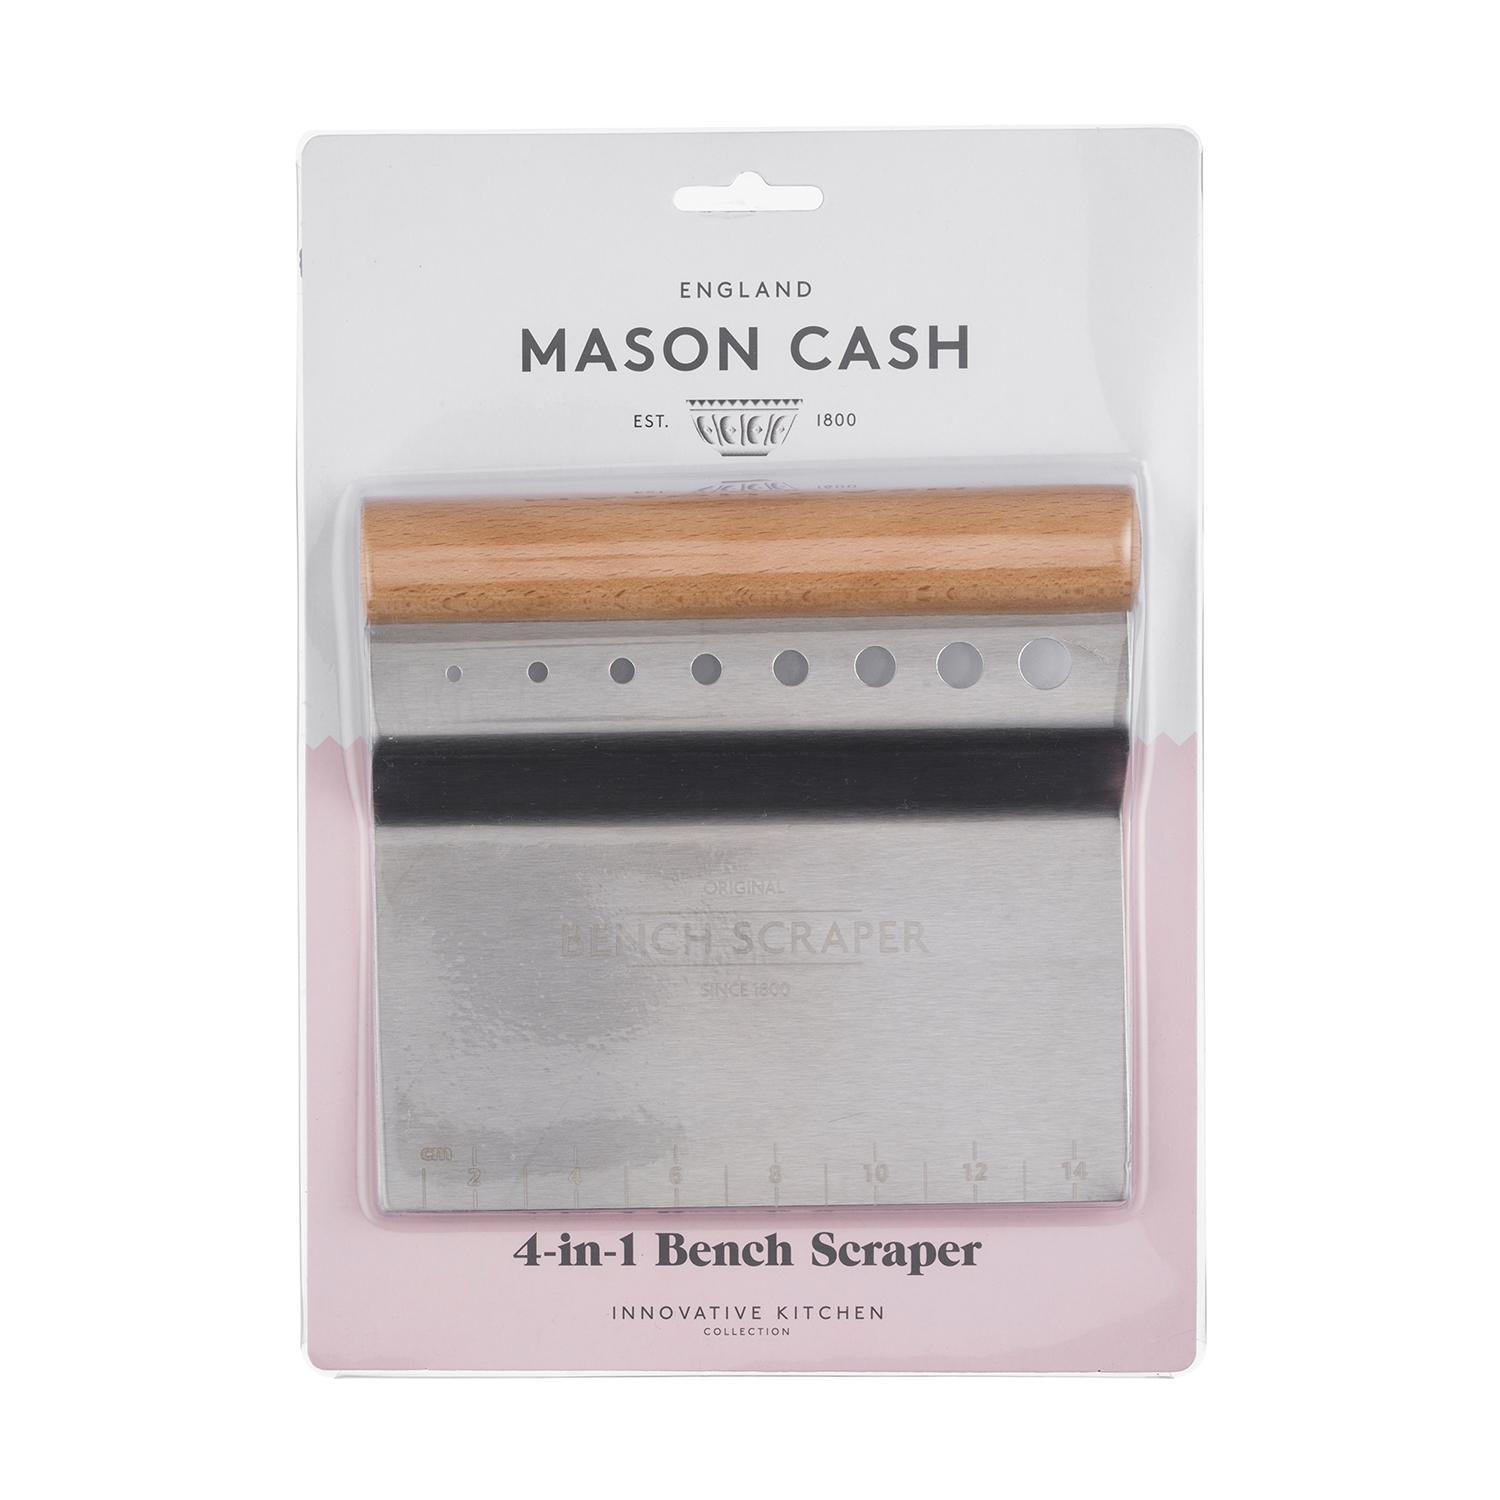 Mason Cash Mason Teig- Innovative - und Marken Mason Cash Küche | Küche Cash 4-IN-1 | Kräuterschneider Innovative 